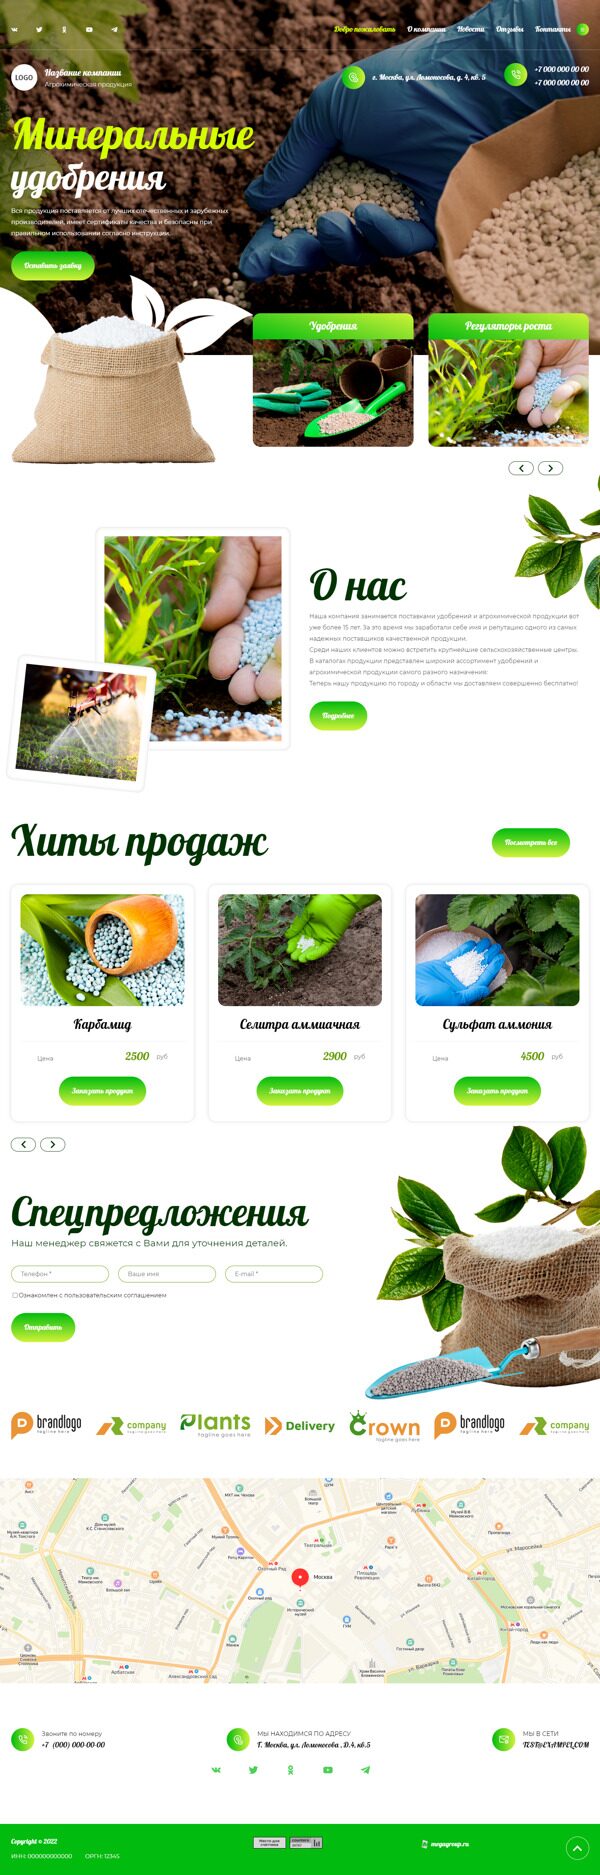 Готовый Сайт-Бизнес № 4546770 - Удобрения и агрохимические продукты (Десктопная версия)